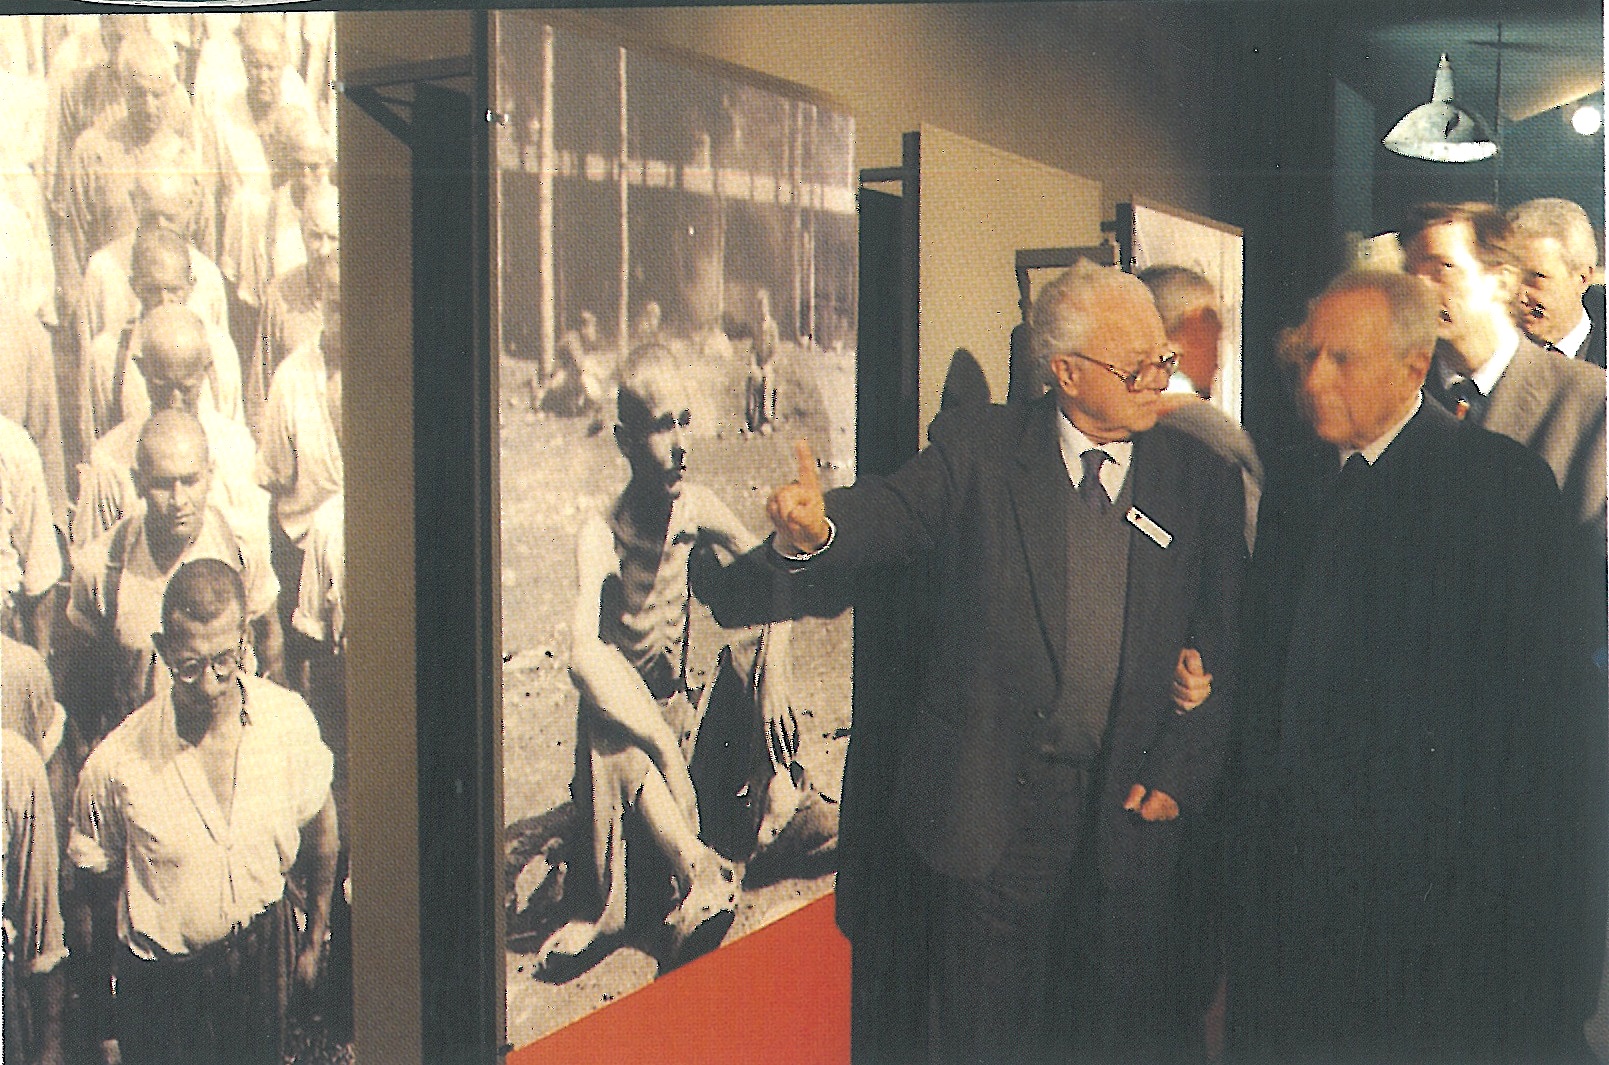 Roberto Castellani guida il presidente Ciampi dentro le sale del Museo